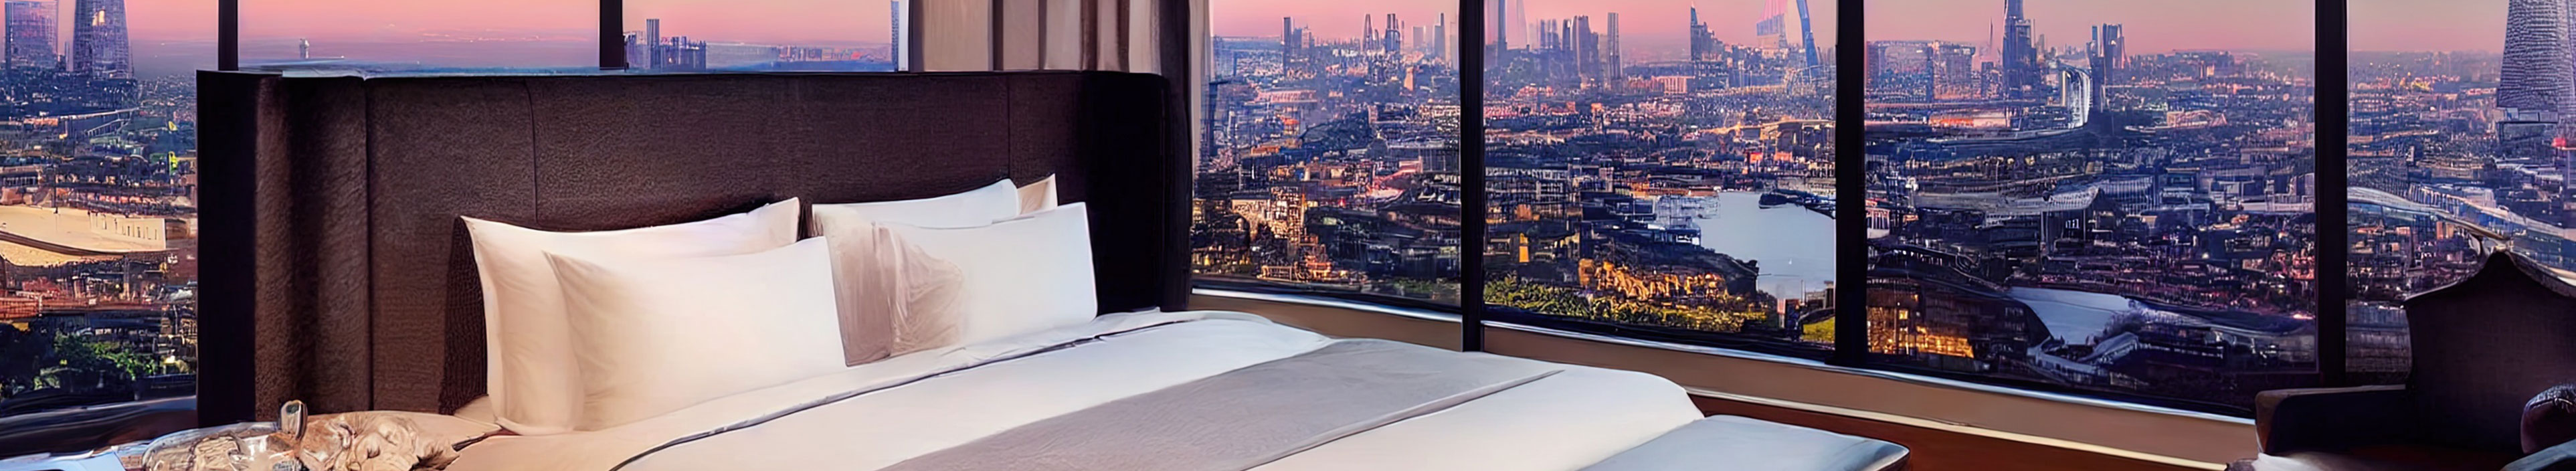 Hotelzimmer mit dem Blick auf die Londoner Skyline.